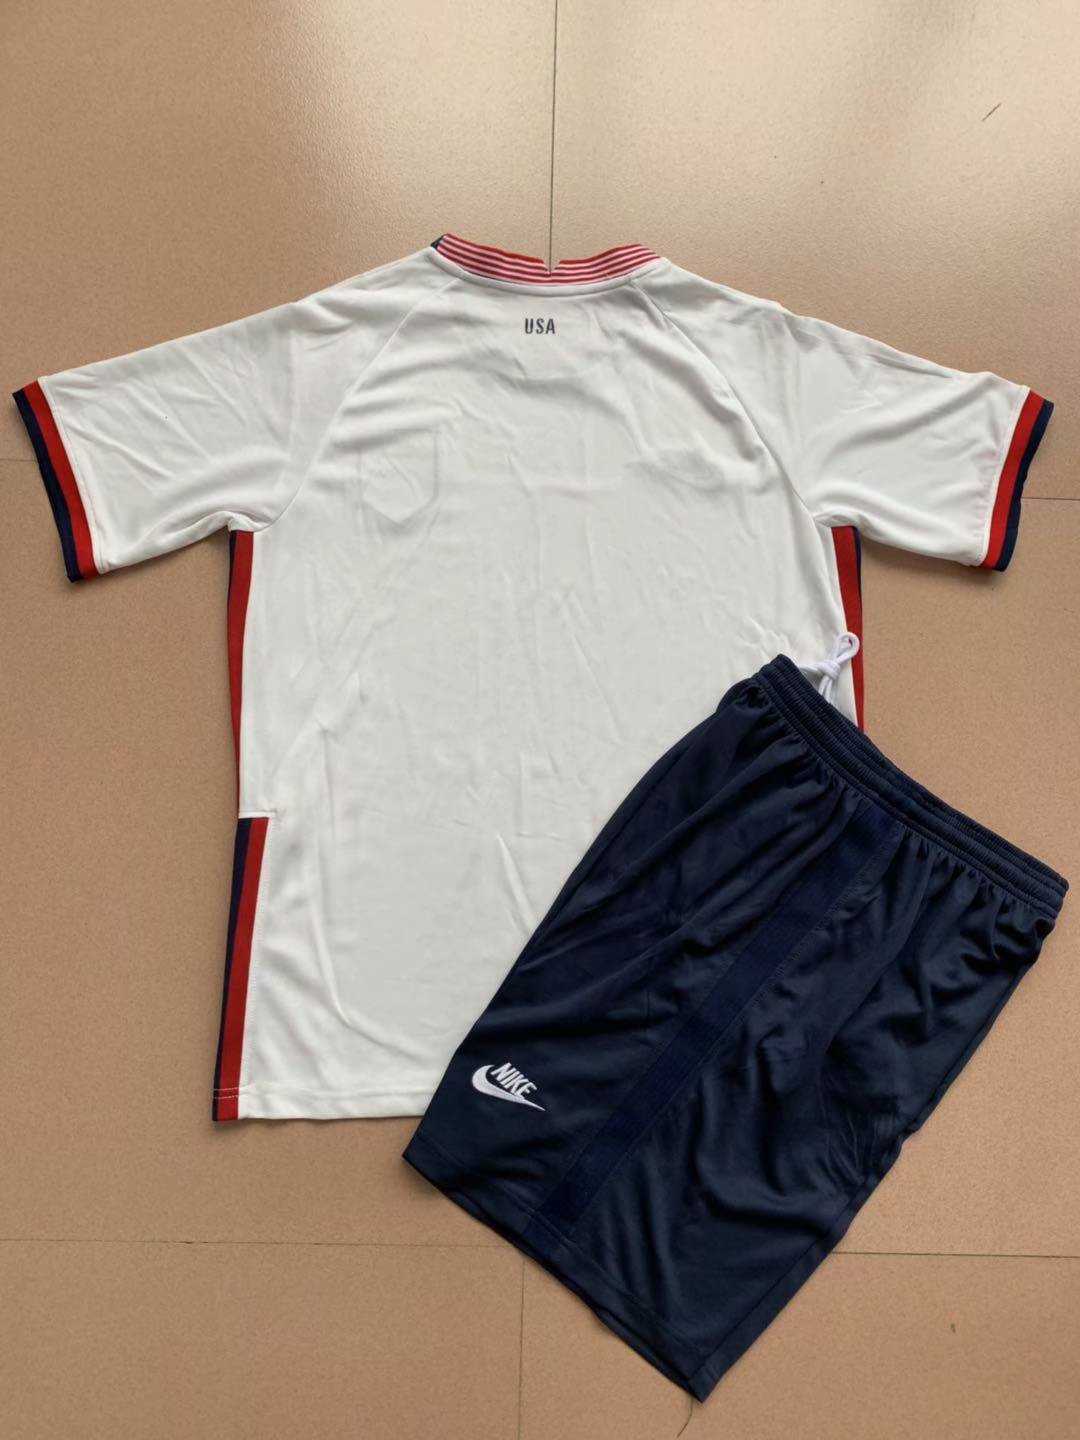 2020 USA Home Kids Soccer Kit(Jersey+Shorts)